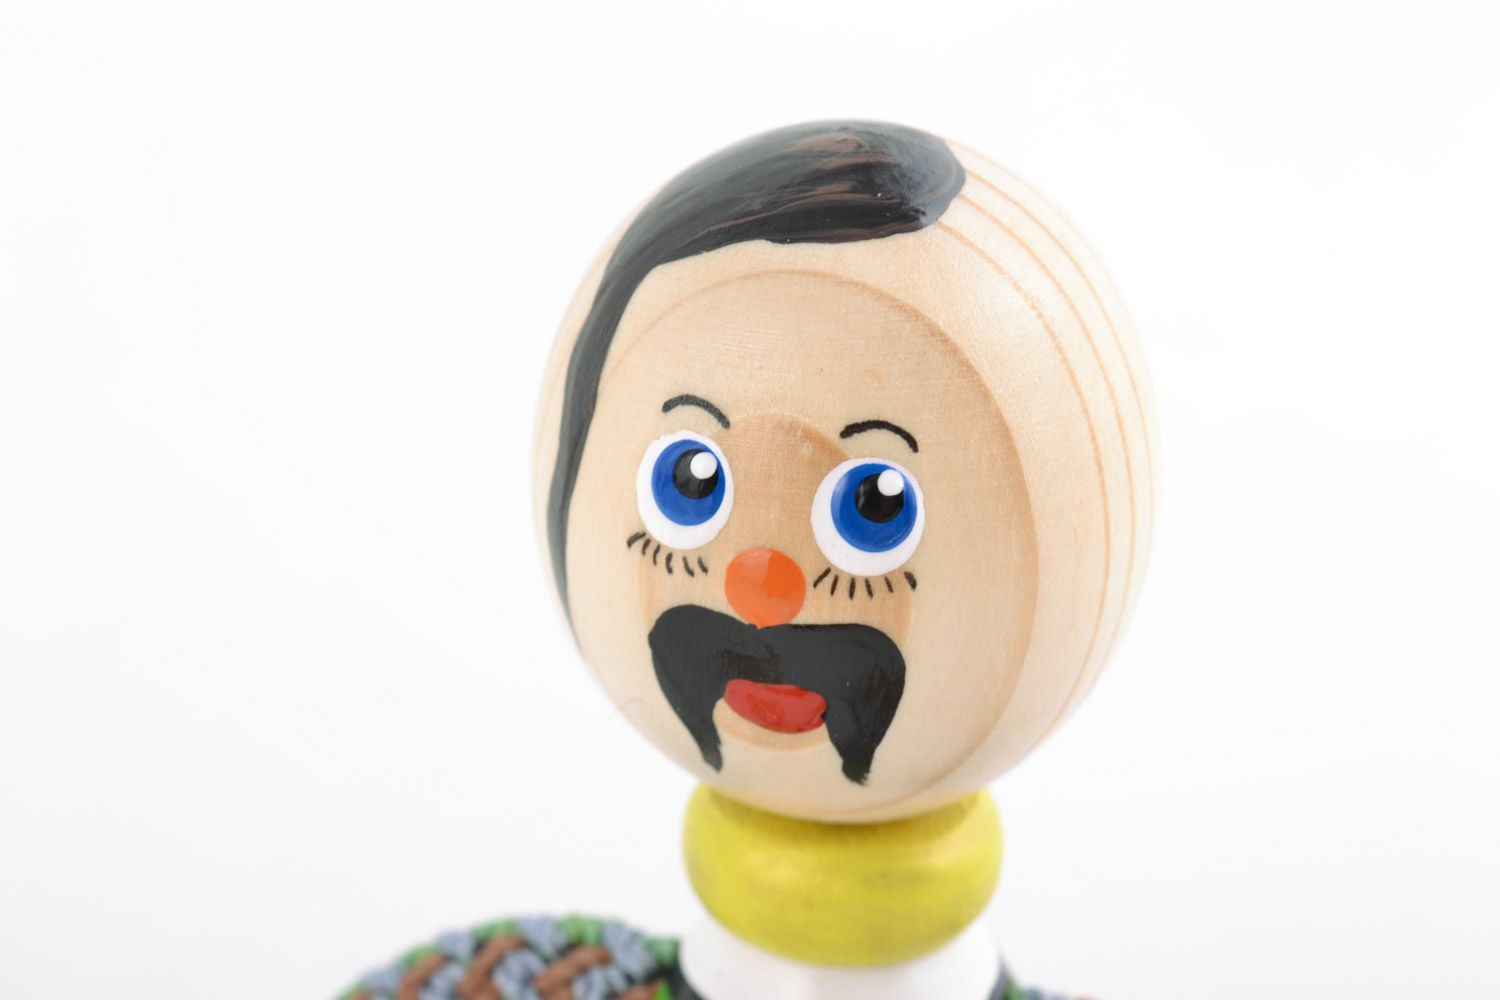 Handmade Spielzeug aus Holz Kosak bemalt öko rein originell hell Geschenk Kinder foto 3